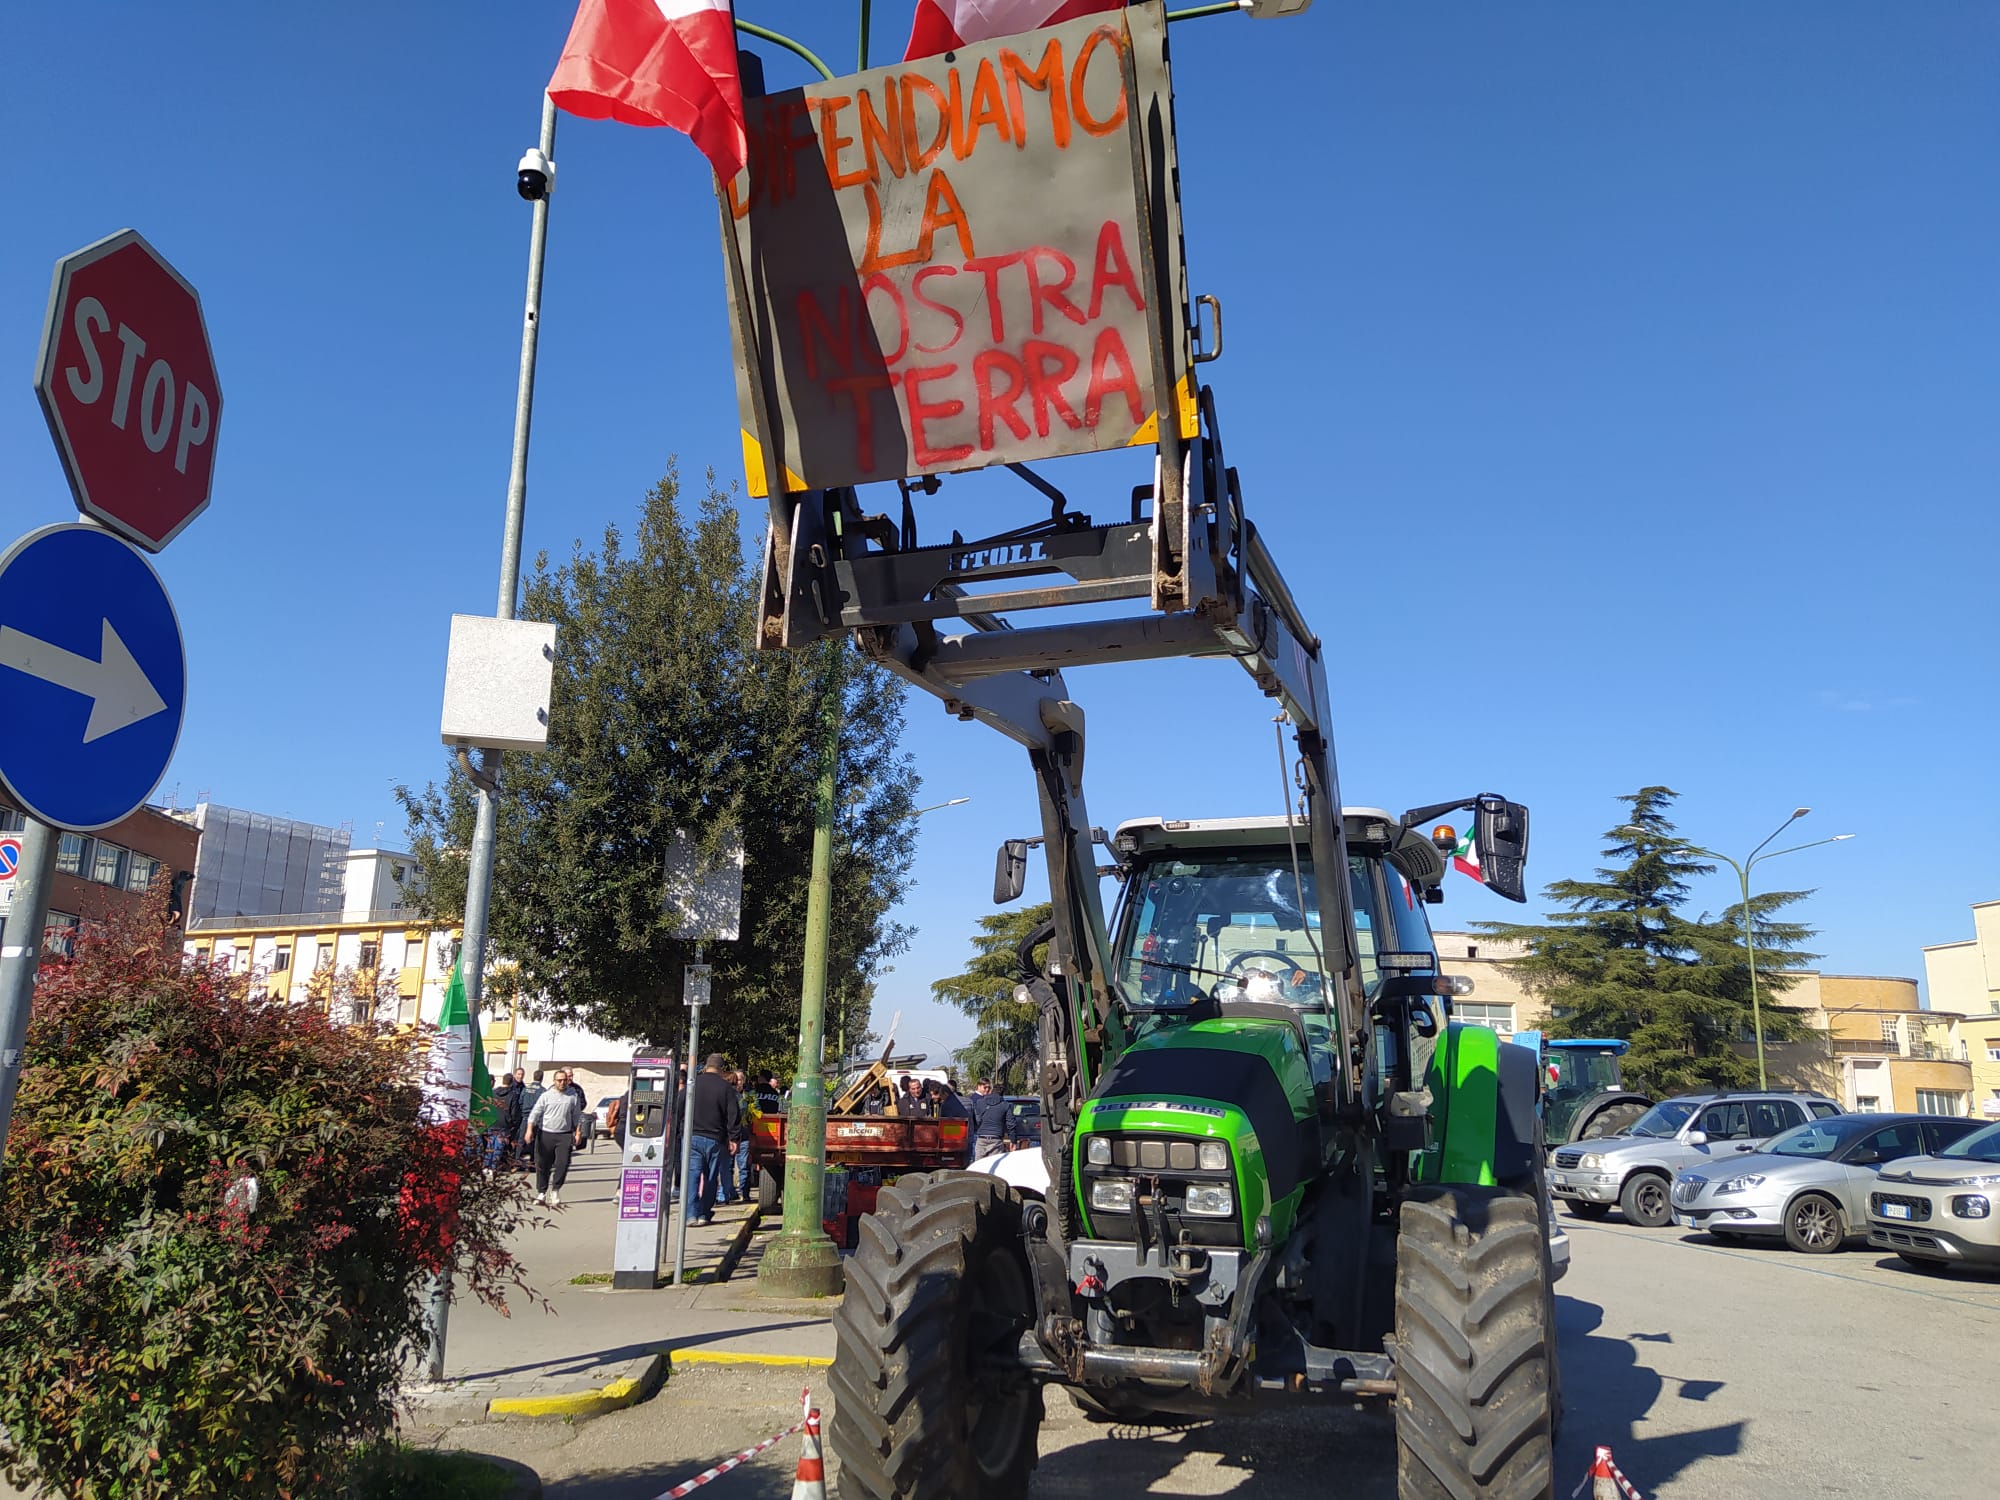 protesta agricoltori benevento